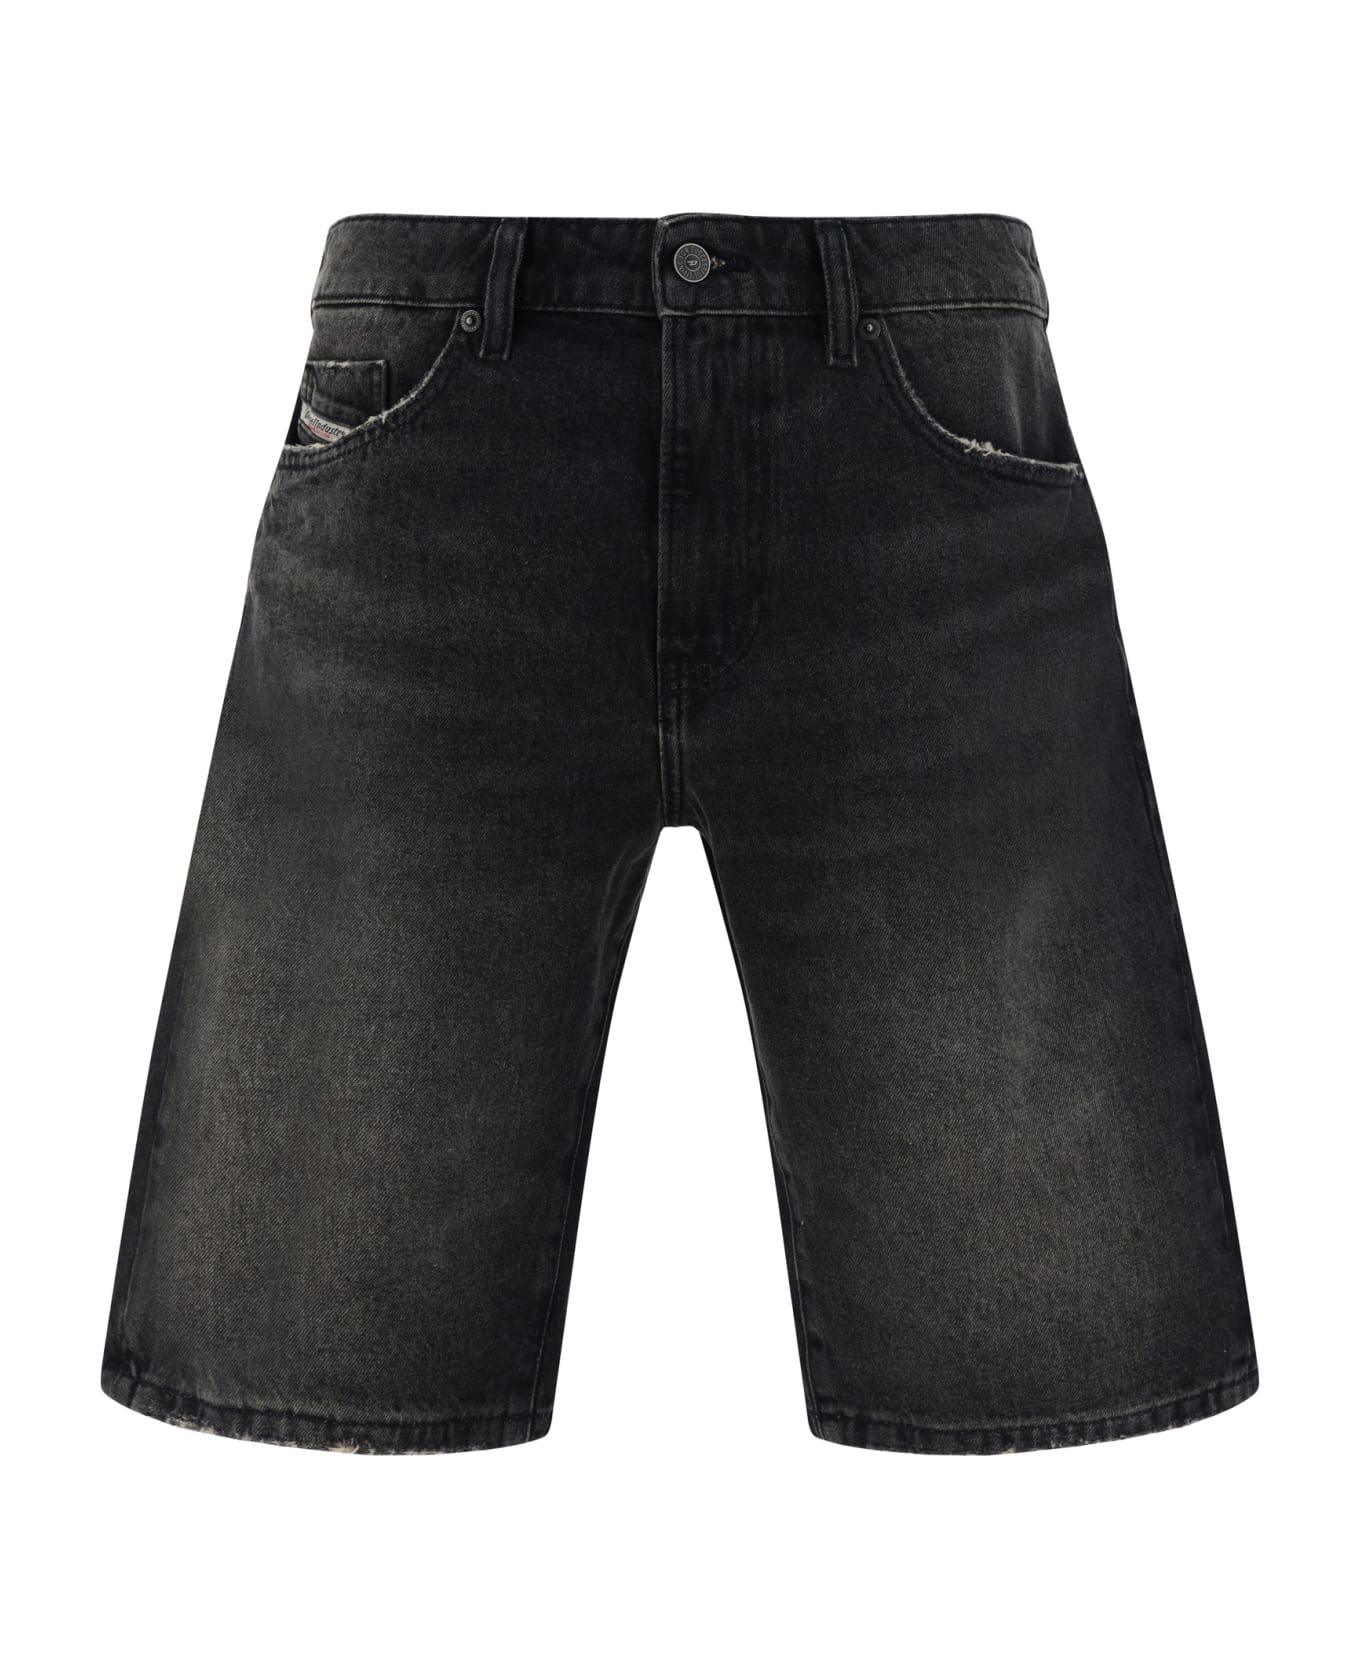 Diesel Denim Shorts - Black/denim